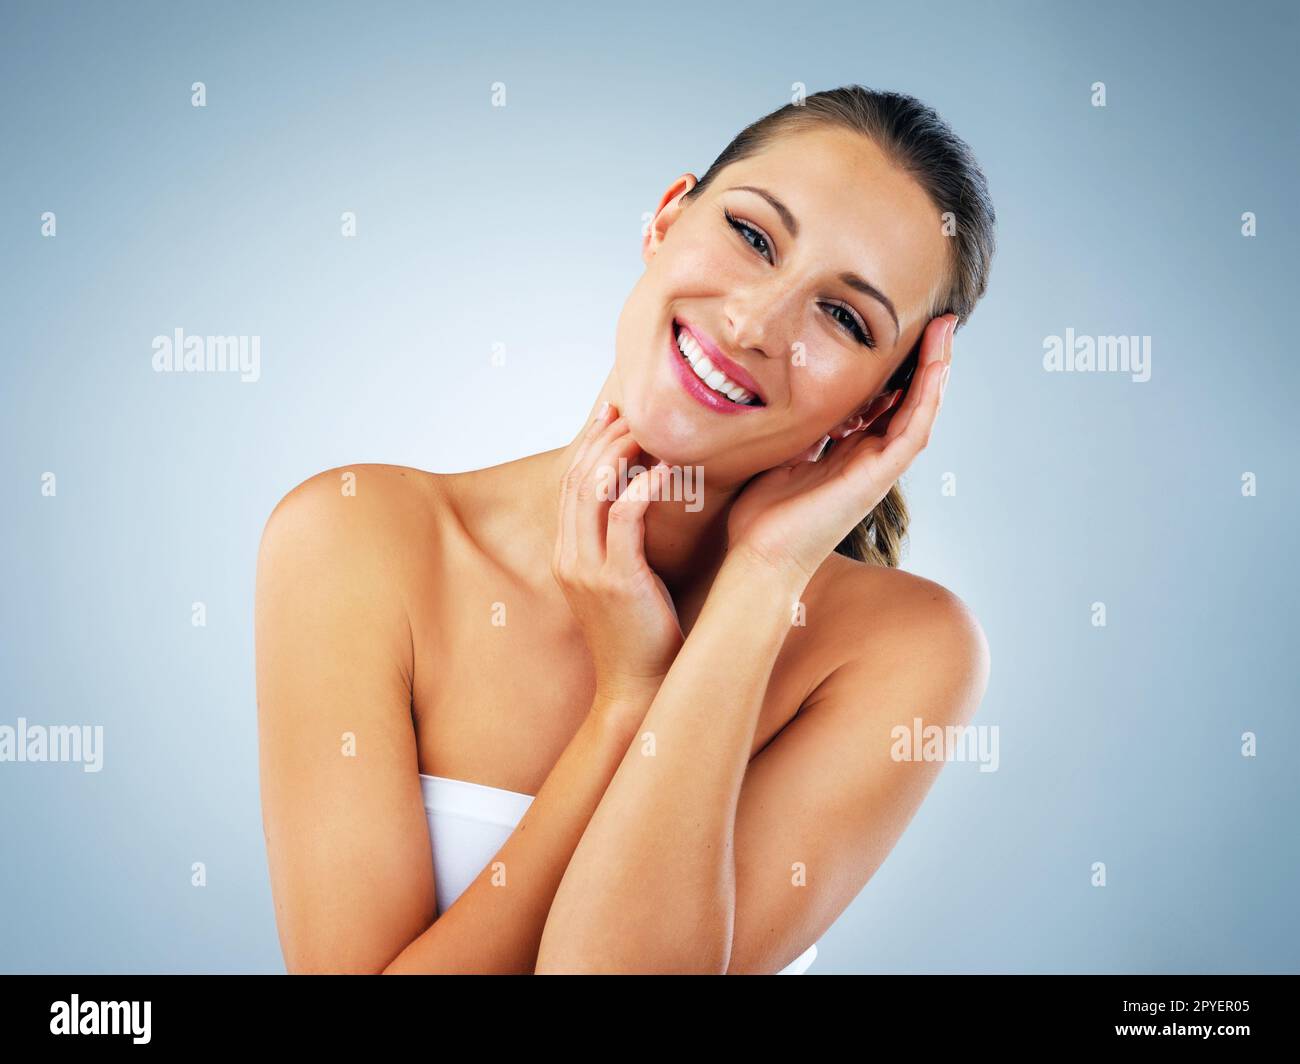 Liebe dich genug, um deine Haut zu pflegen. Studioaufnahme einer schönen und gesunden jungen Frau vor blauem Hintergrund. Stockfoto